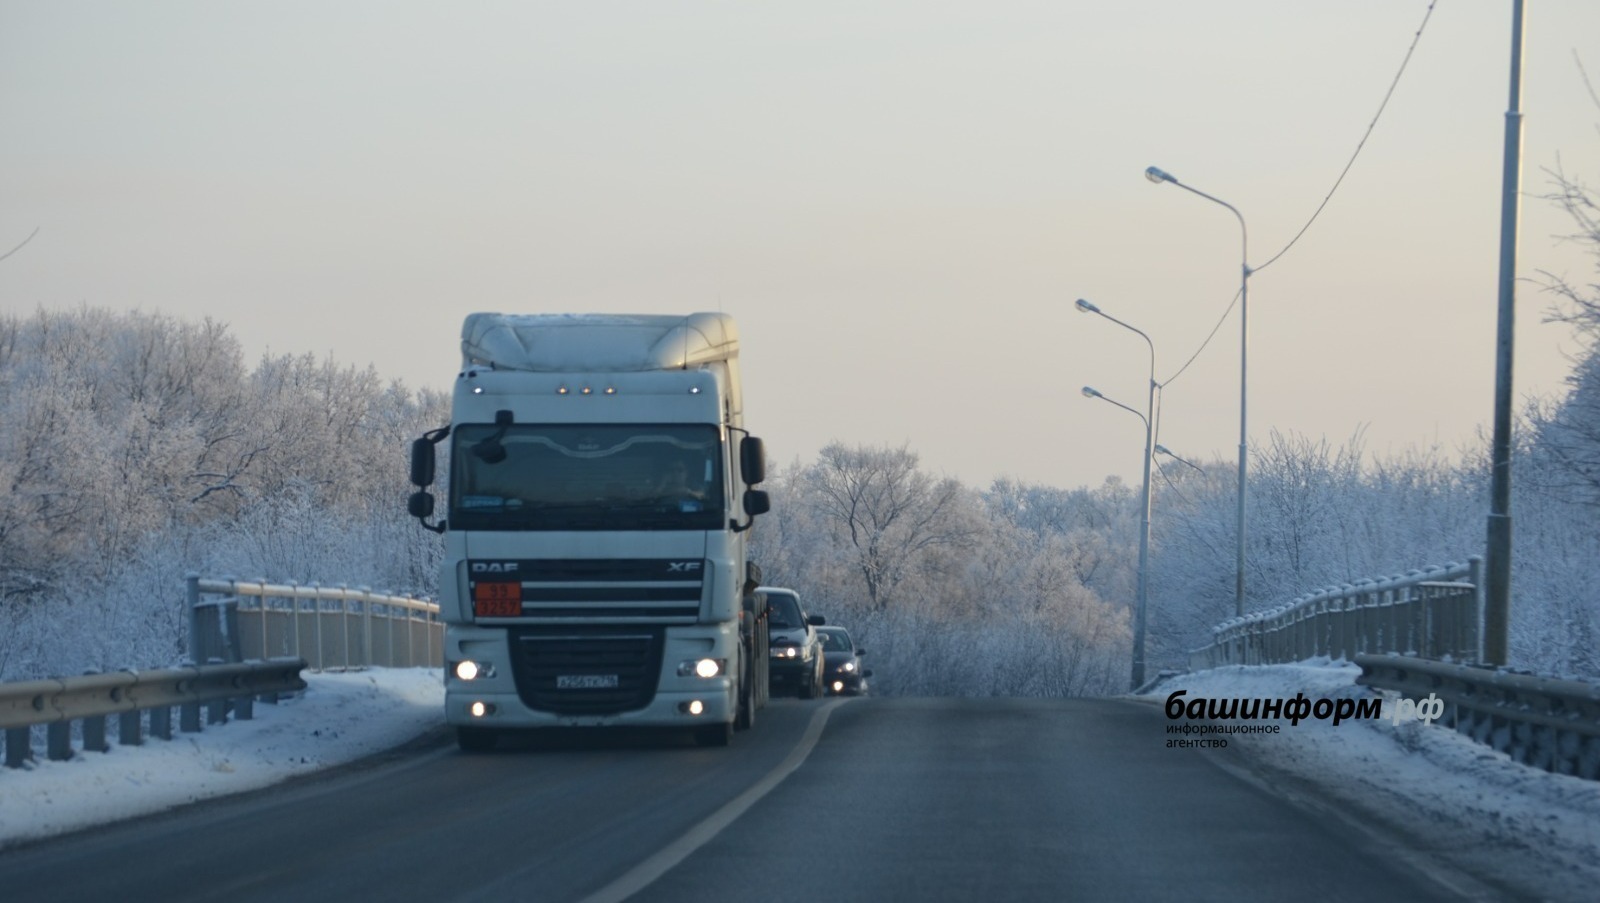 Участок М-5 «Урал» в Башкирии открылся для проезда большегрузов